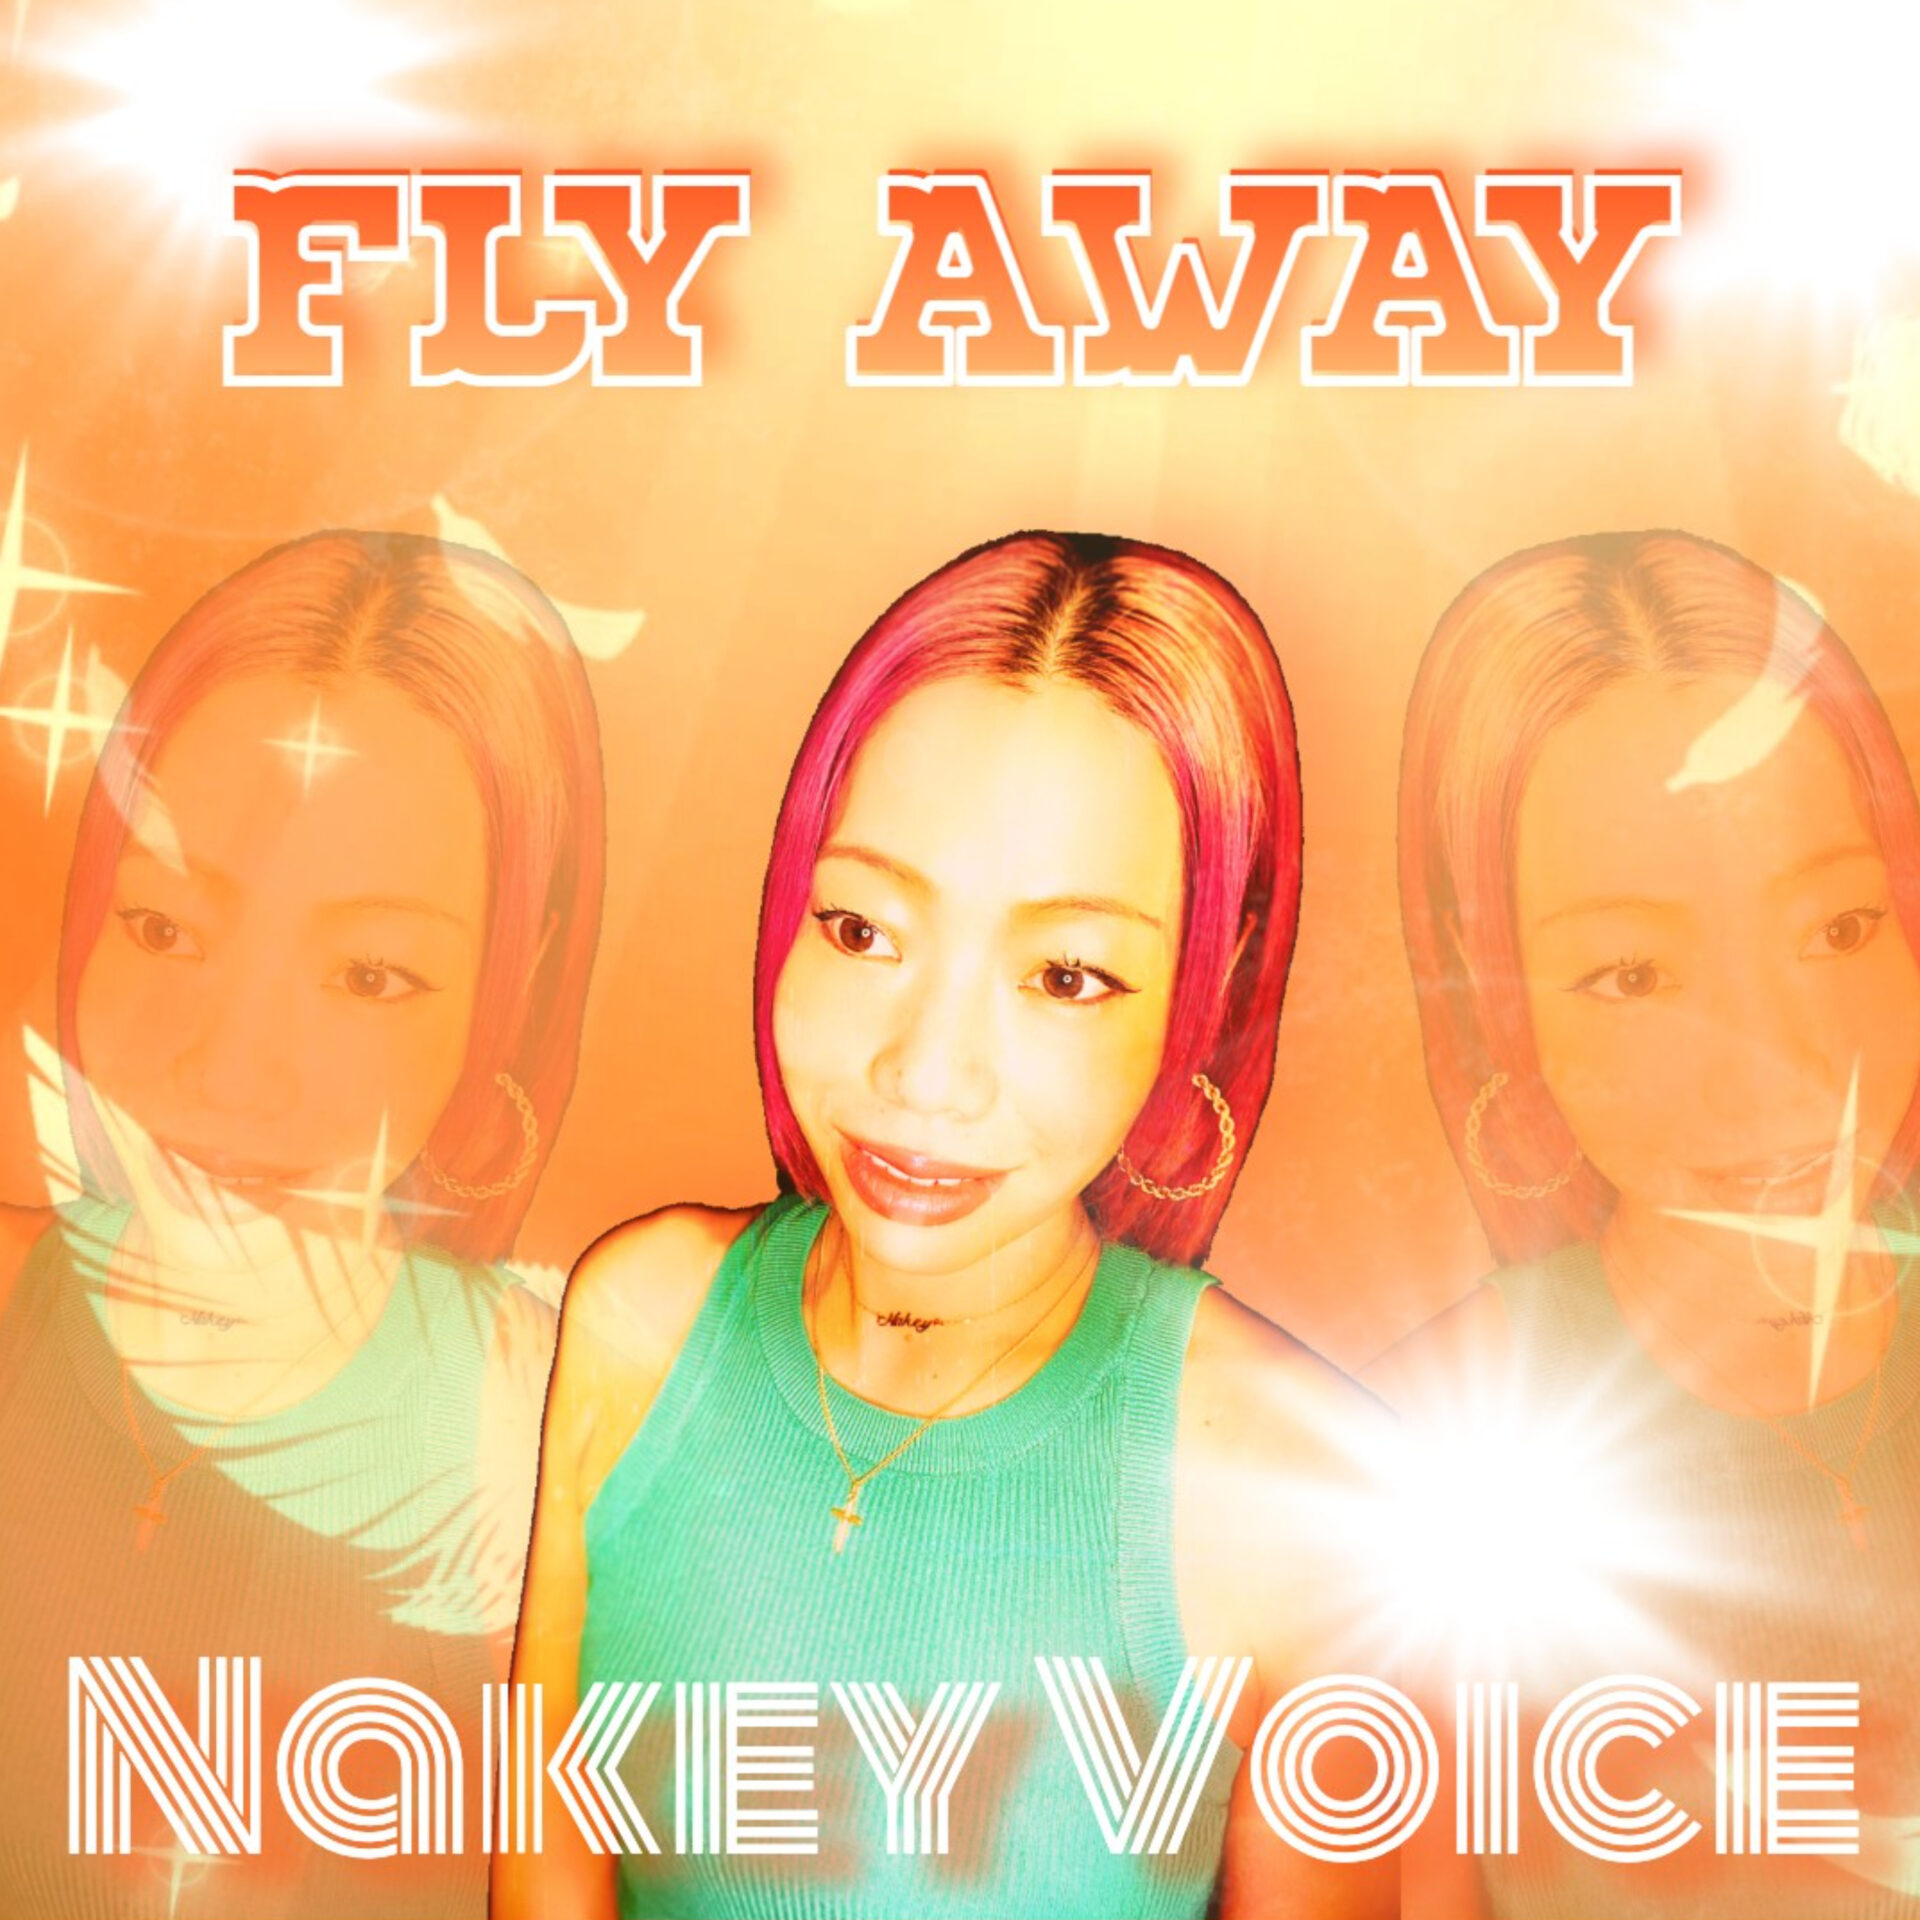 Nakey Voice Flyaway